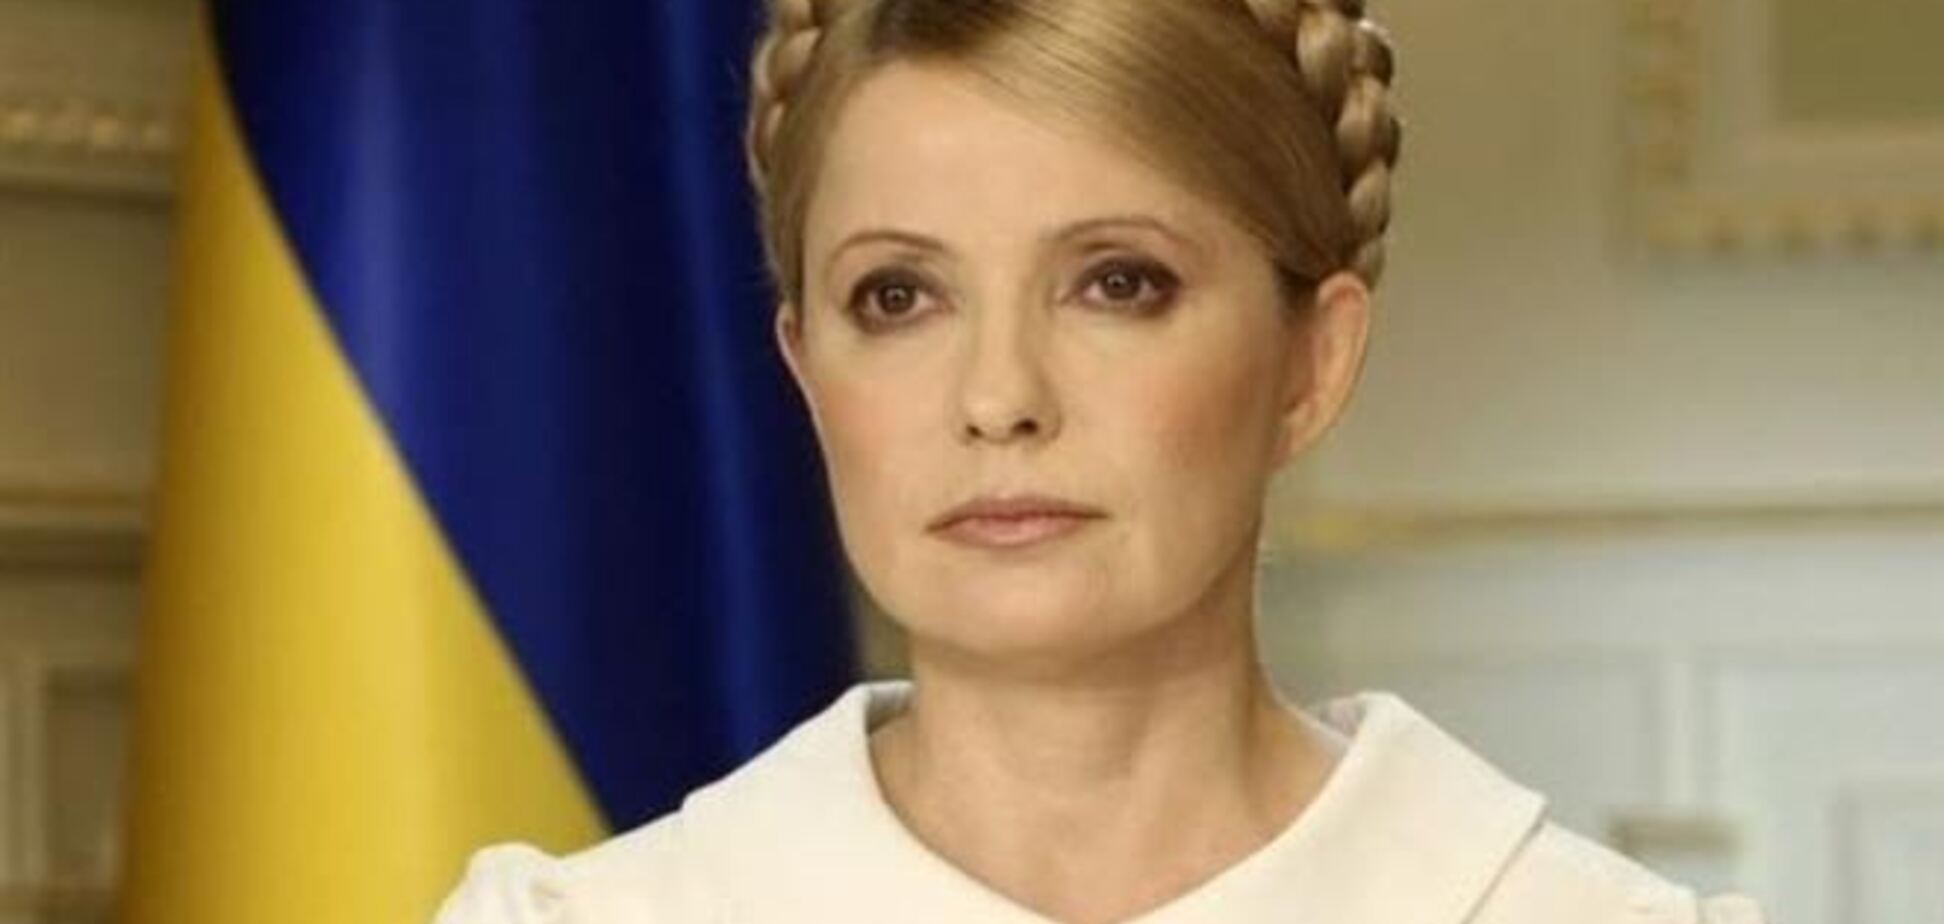 ЕС ждет от Украины решительных действий по Тимошенко